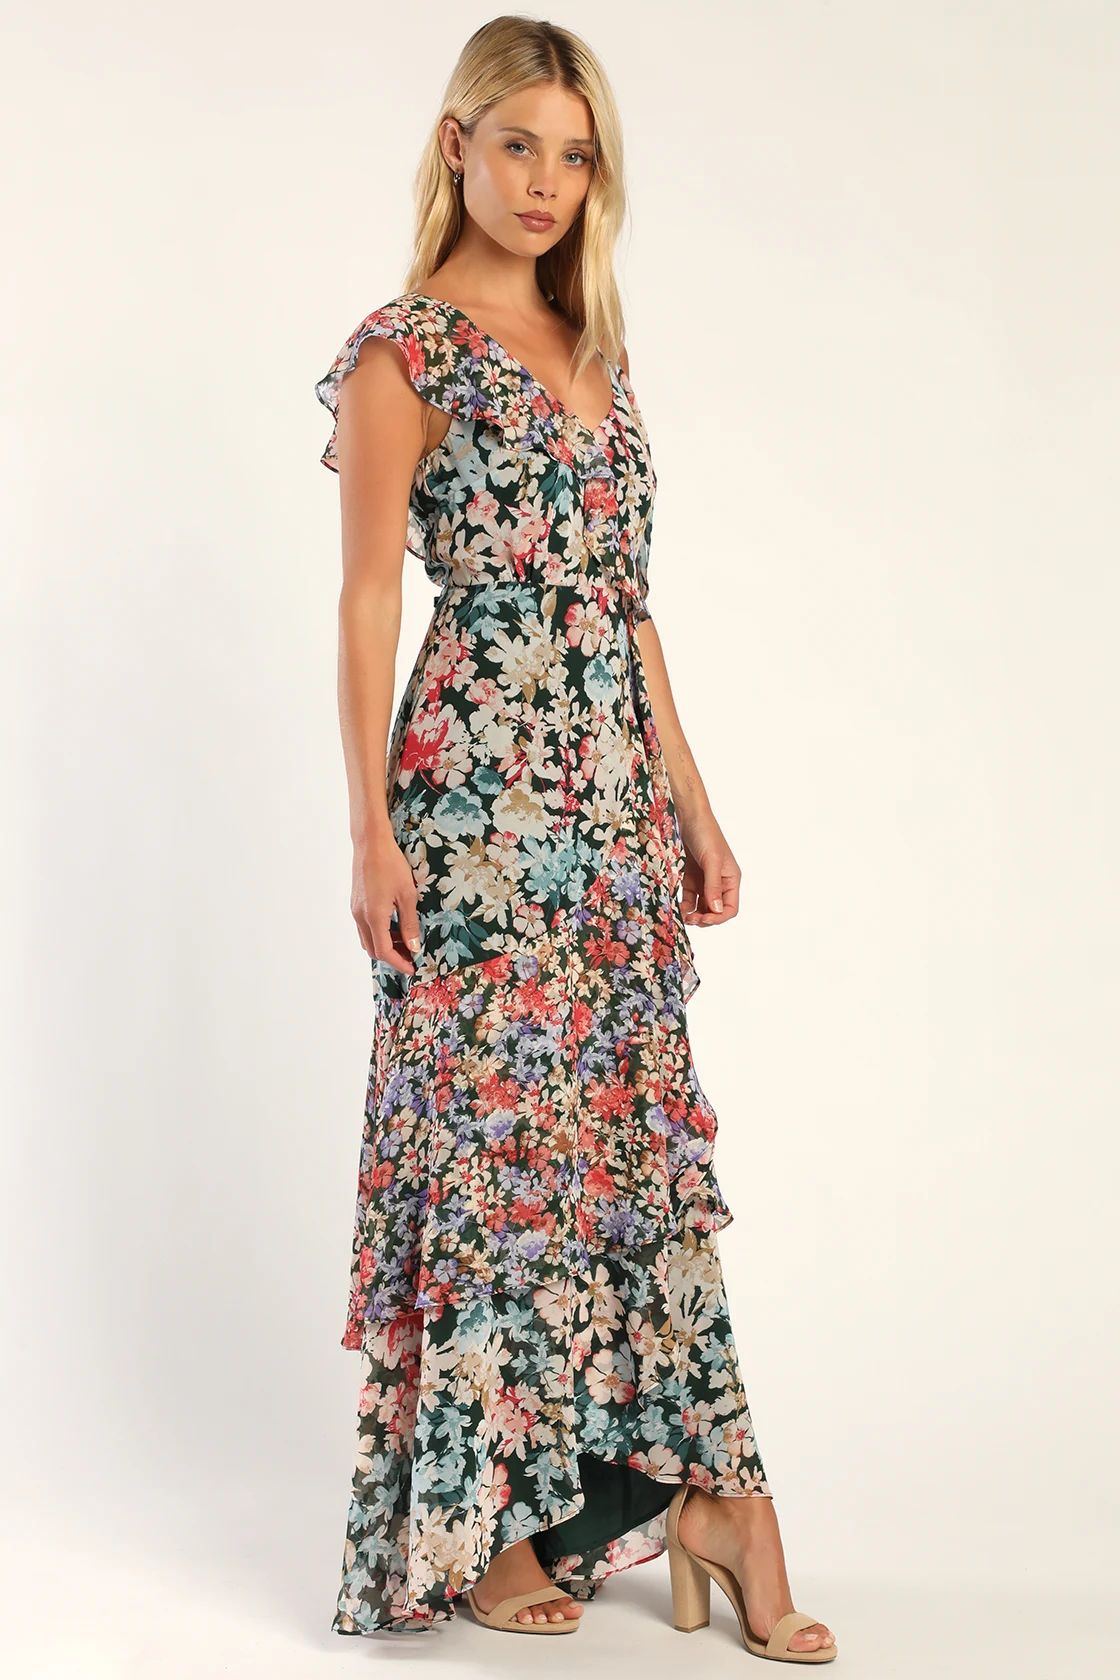 Radiant Hunter Green Floral Print Chiffon Maxi Dress | Lulus (US)